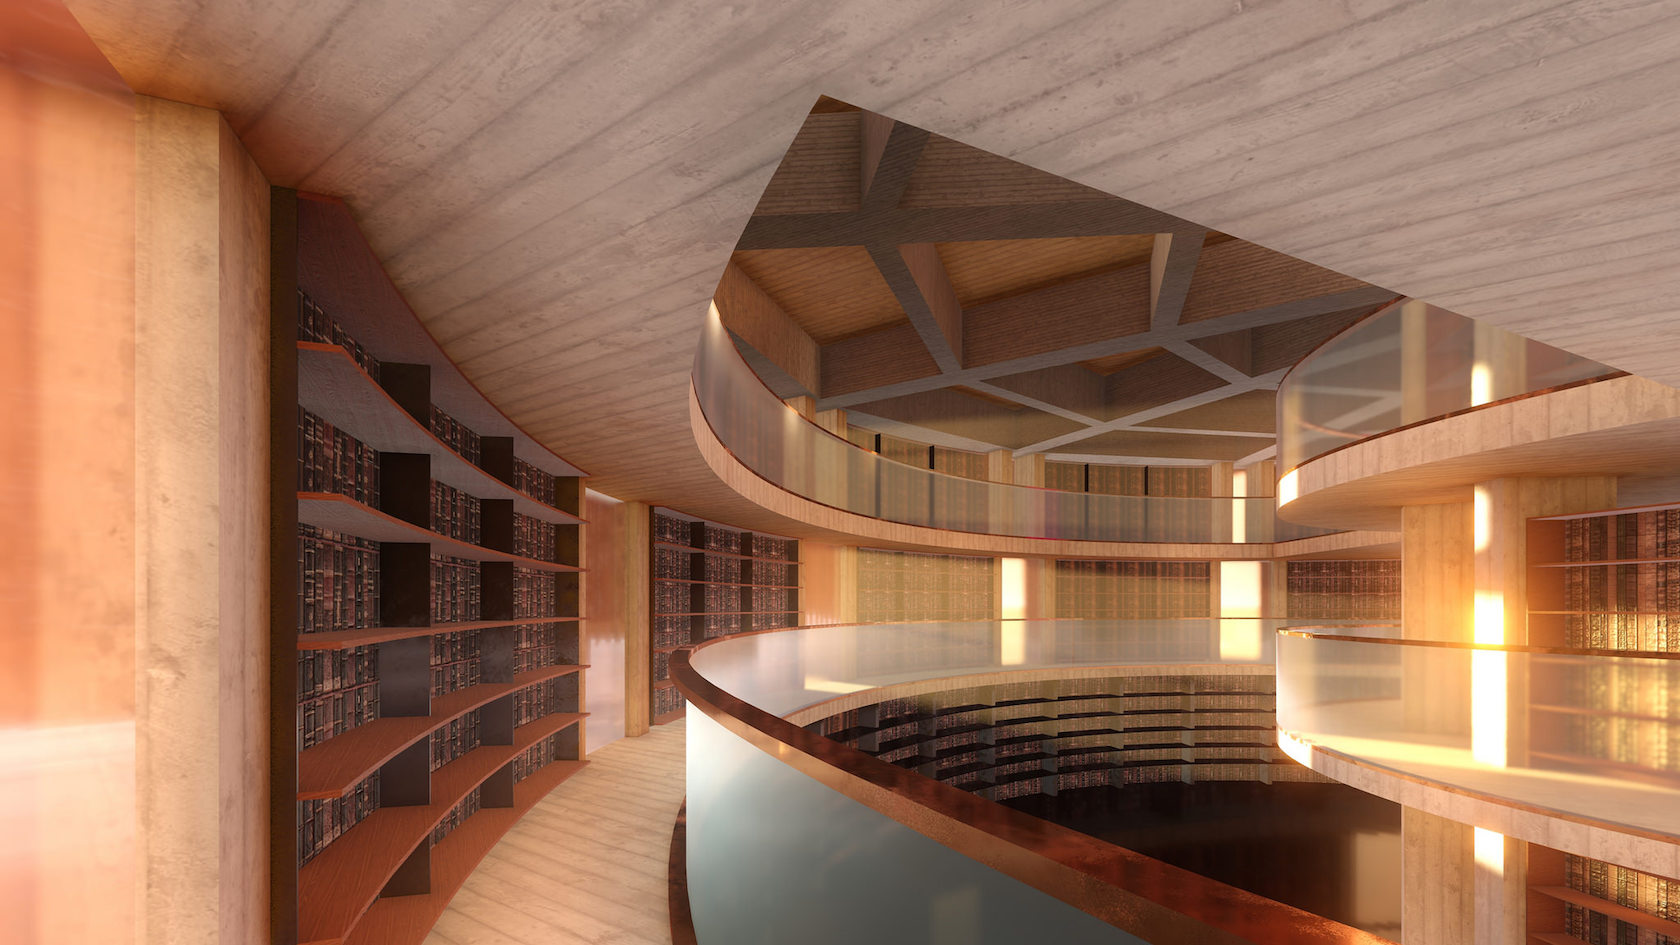 MONA library renderings